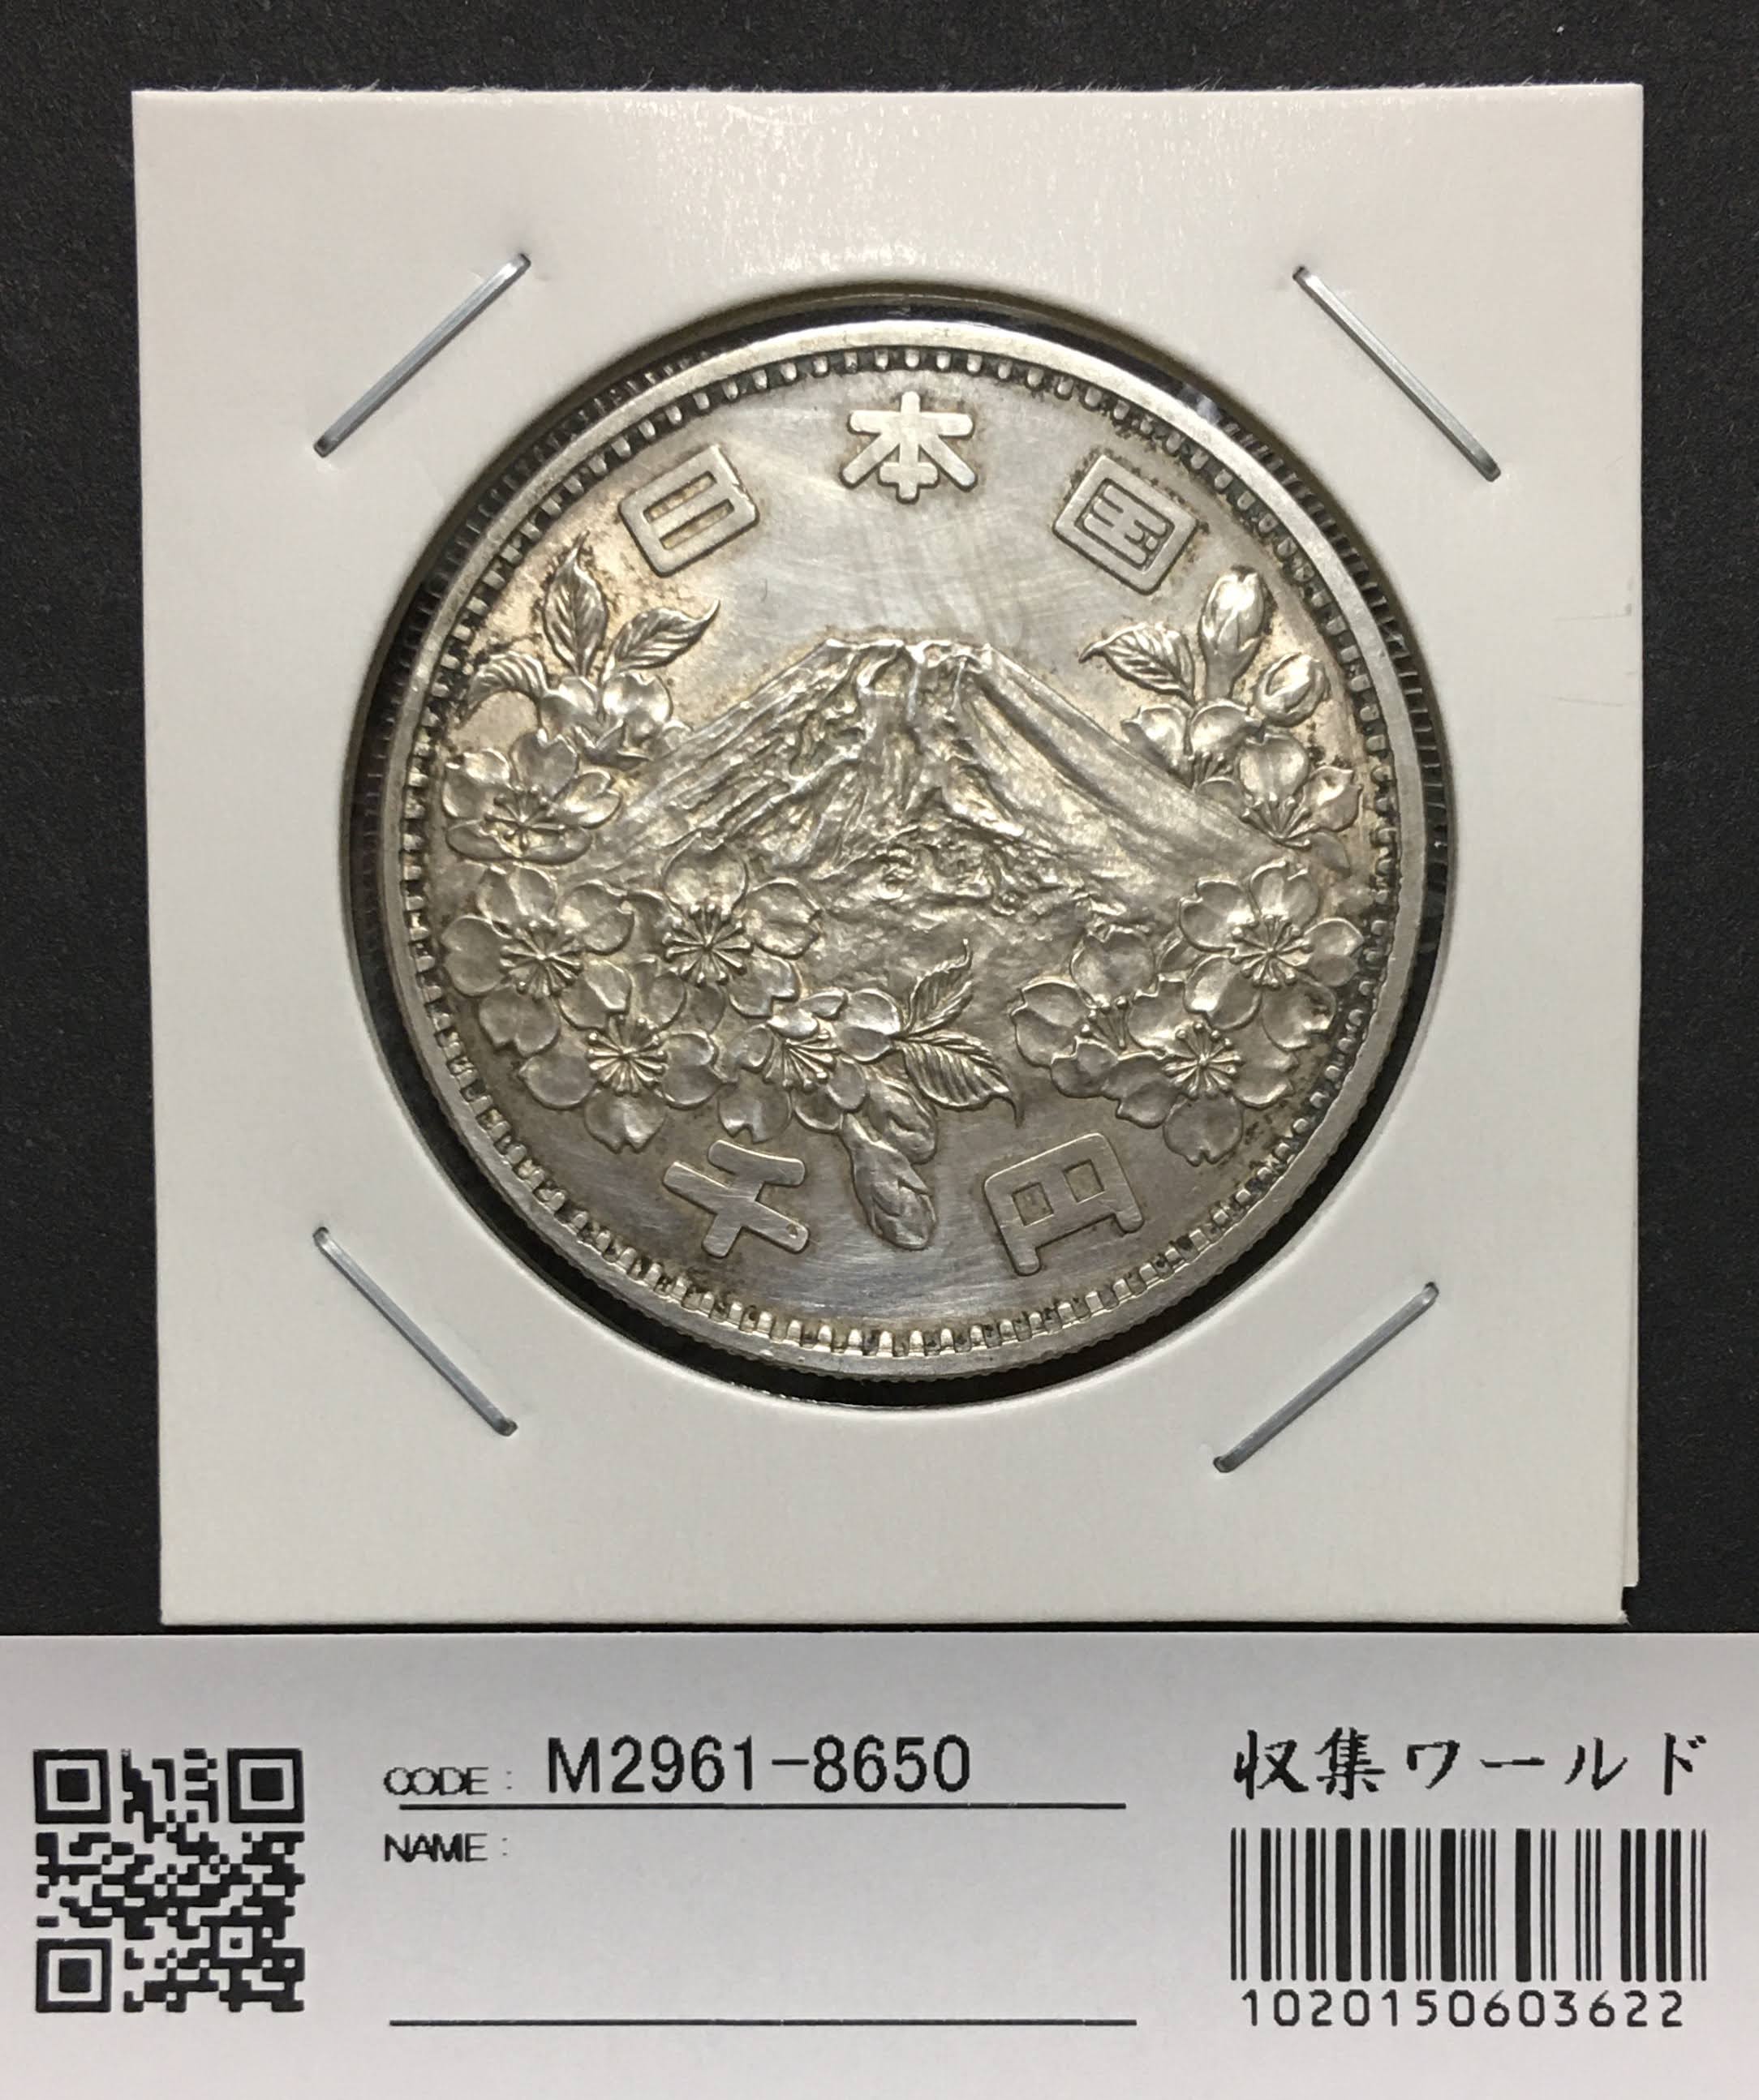 1964年(昭和39) 東京オリンピック記念 1000円銀貨 極美品-8650